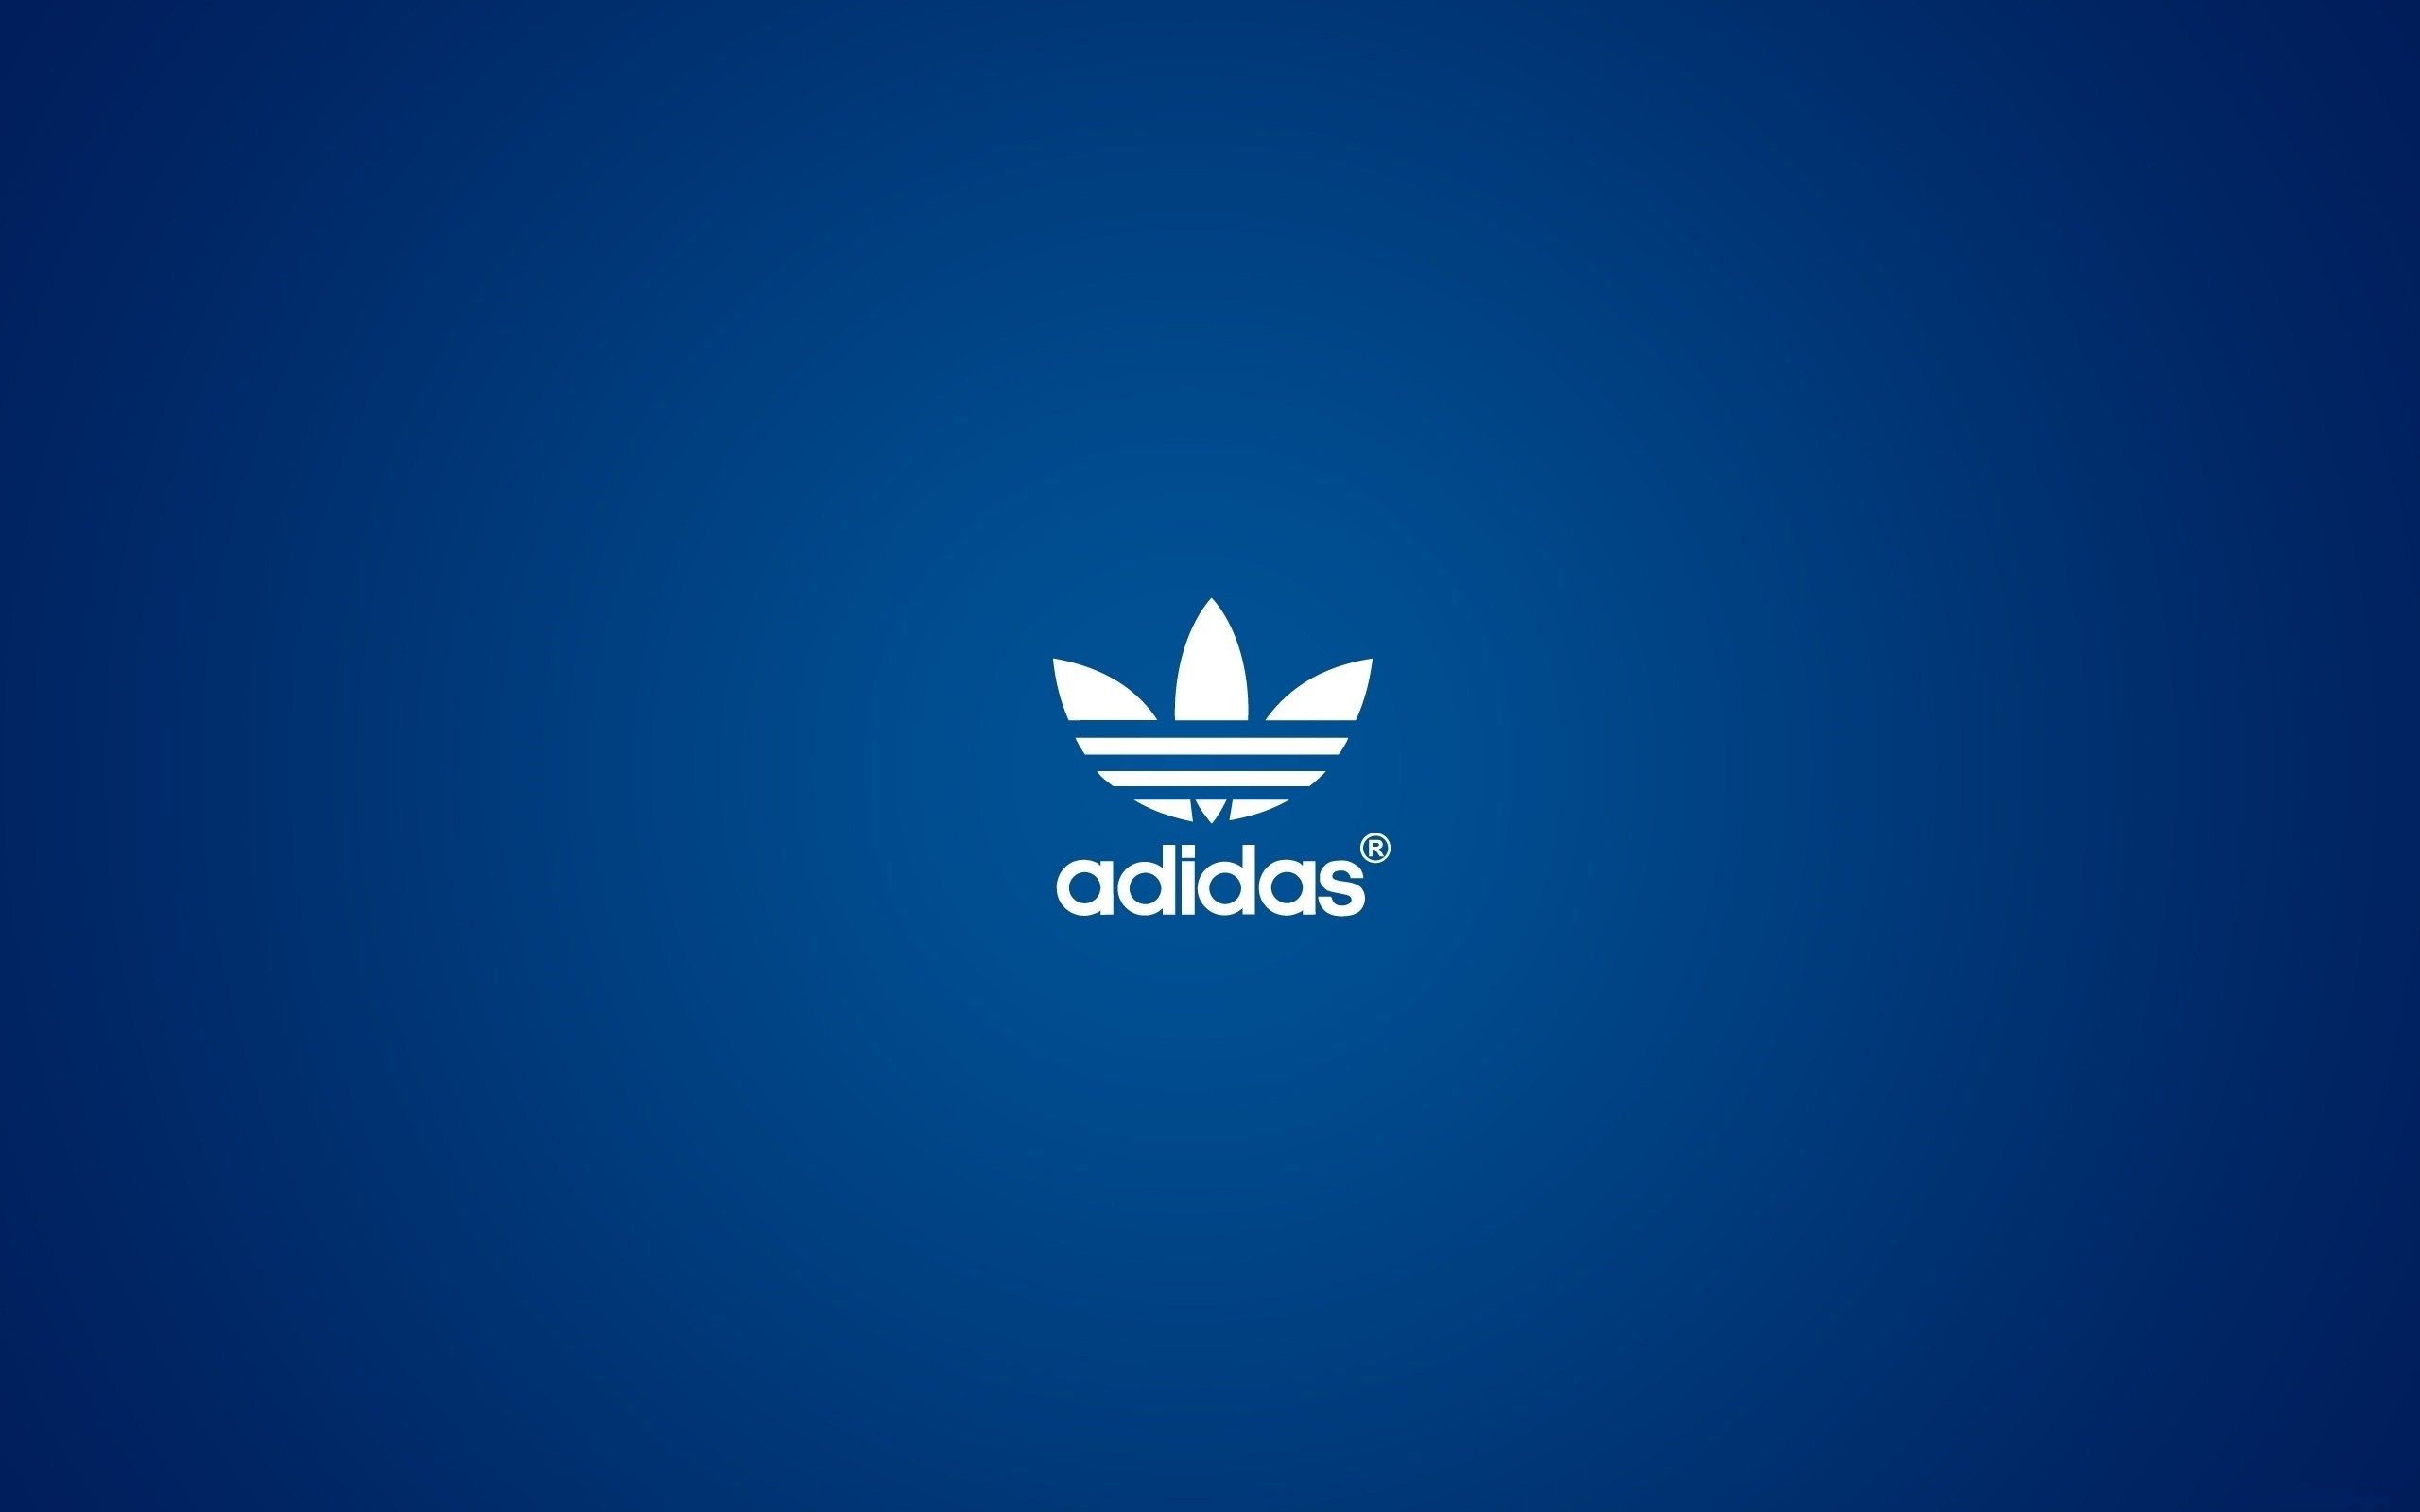 Adidas Logo HD Wallpaper Background UHD 2k 4k 5k Tablet